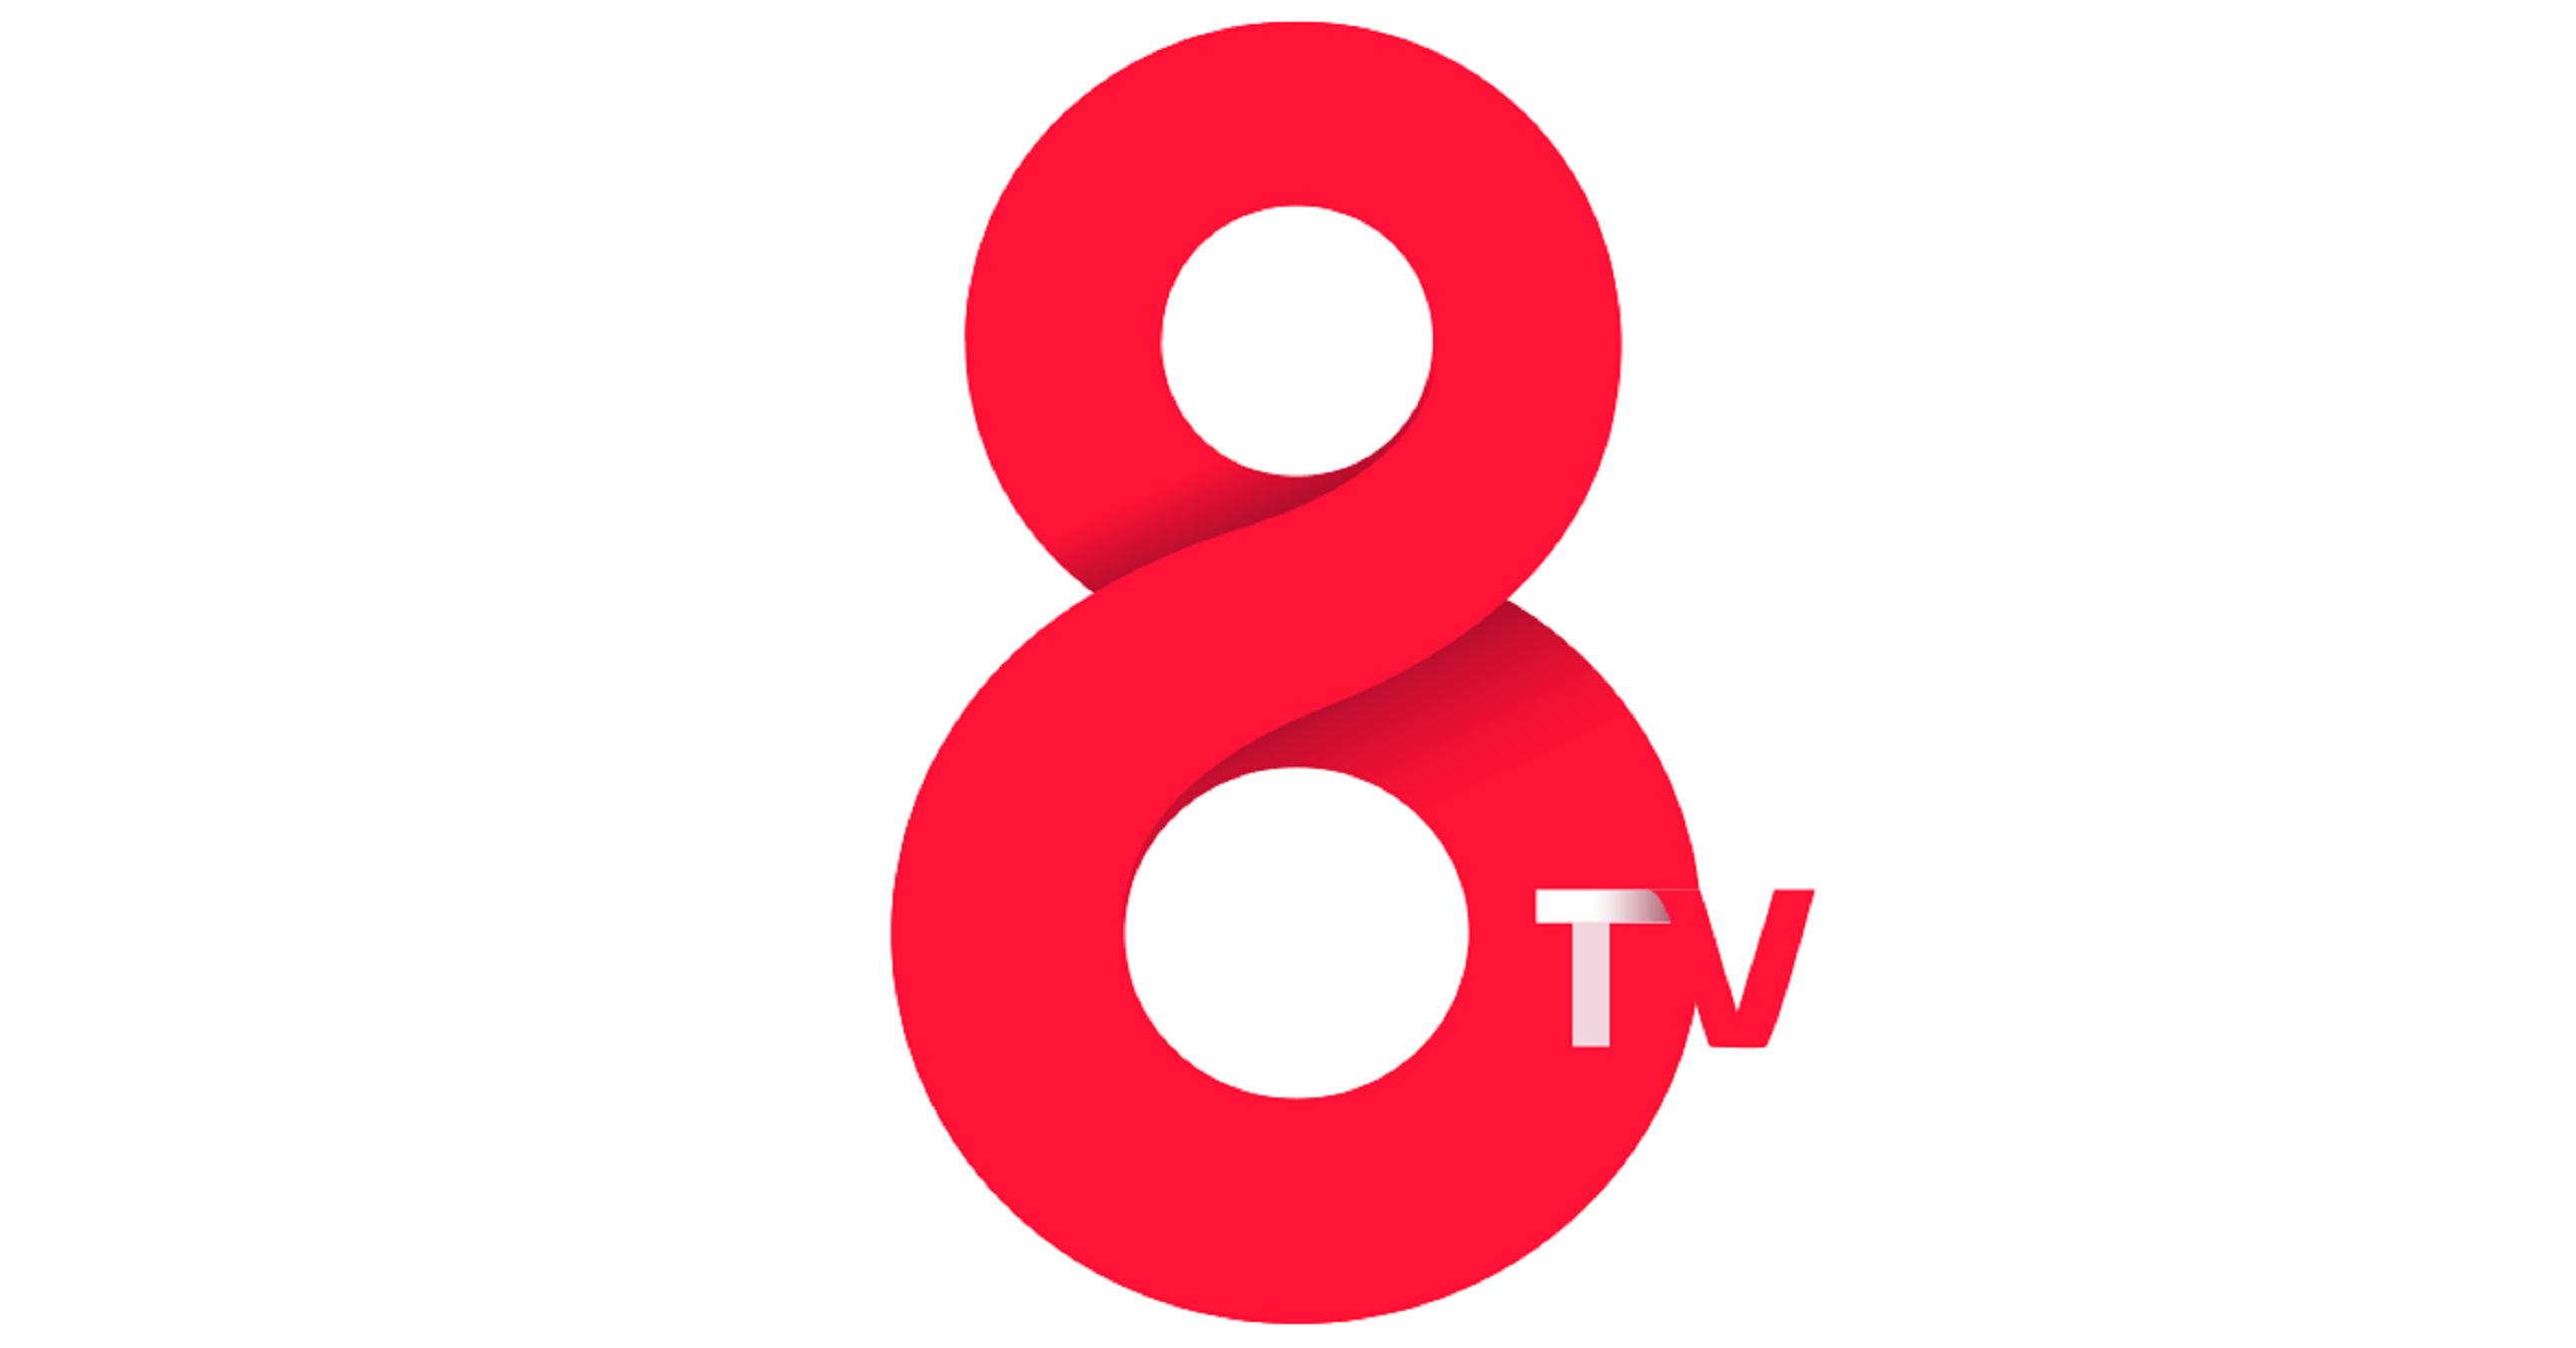 TV3 deixarà de pagar a 8tv per emetre per la seva freqüència